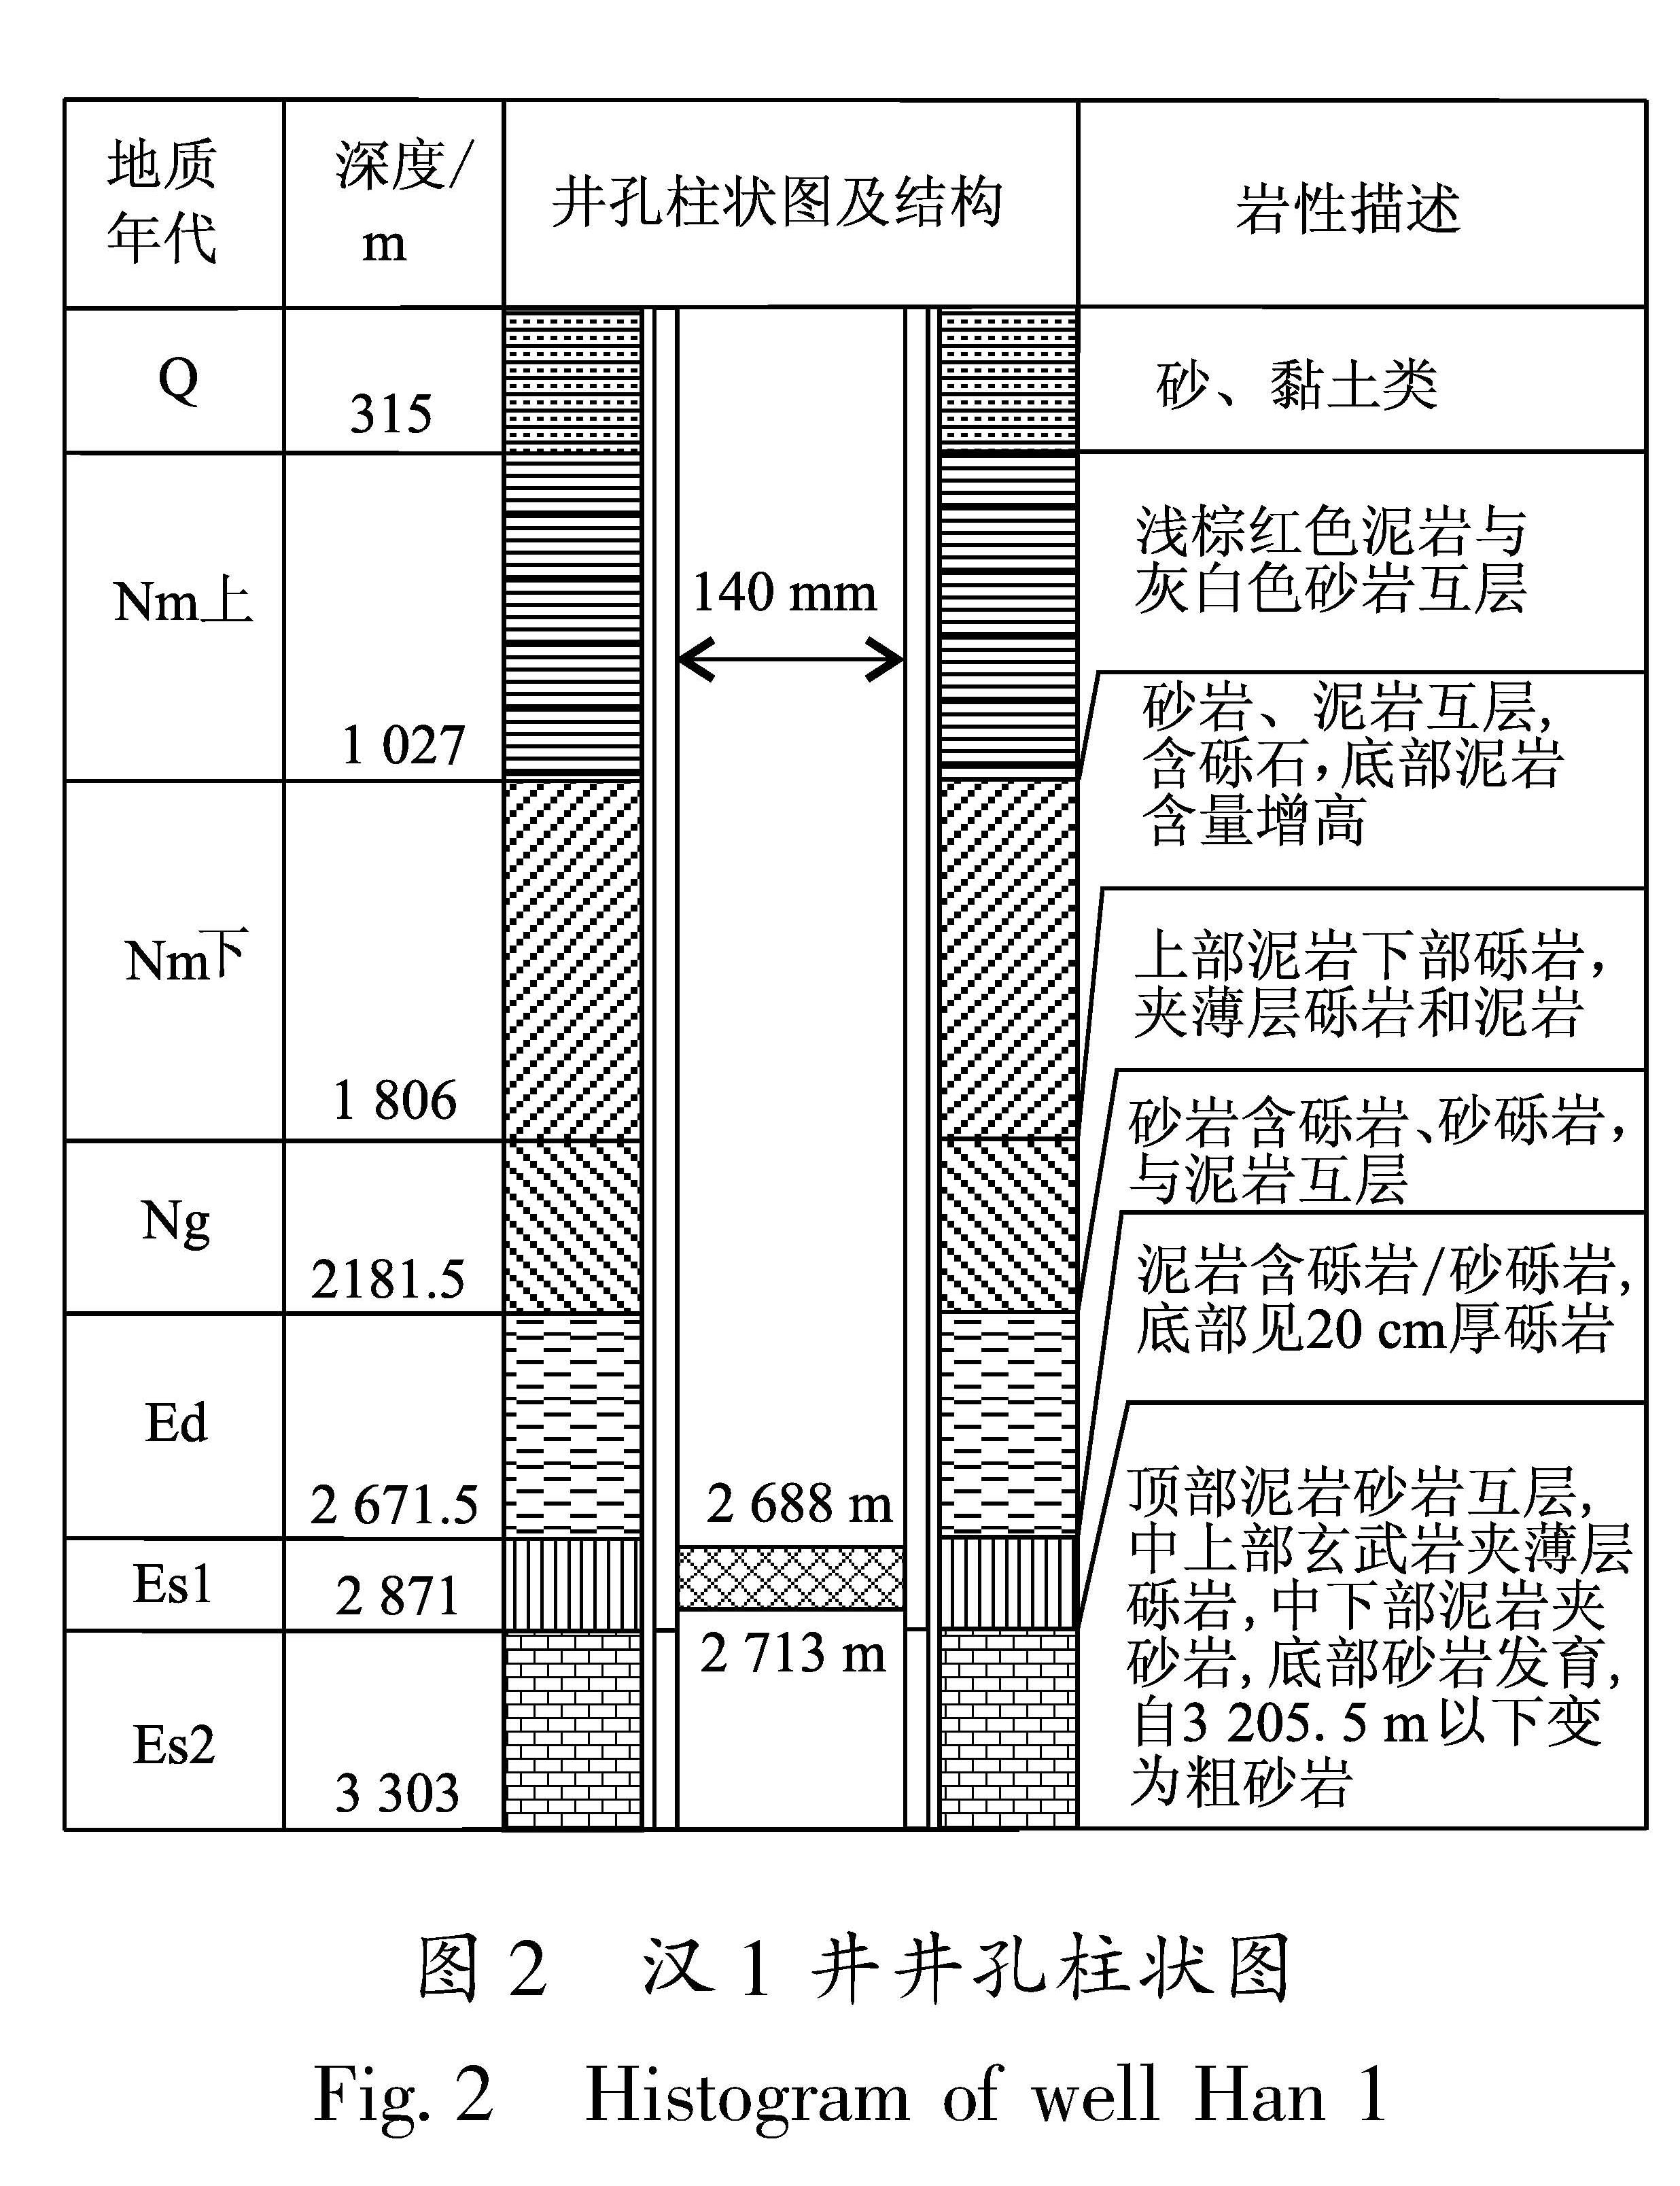 图2 汉1井井孔柱状图<br/>Fig.2 Histogram of well Han 1